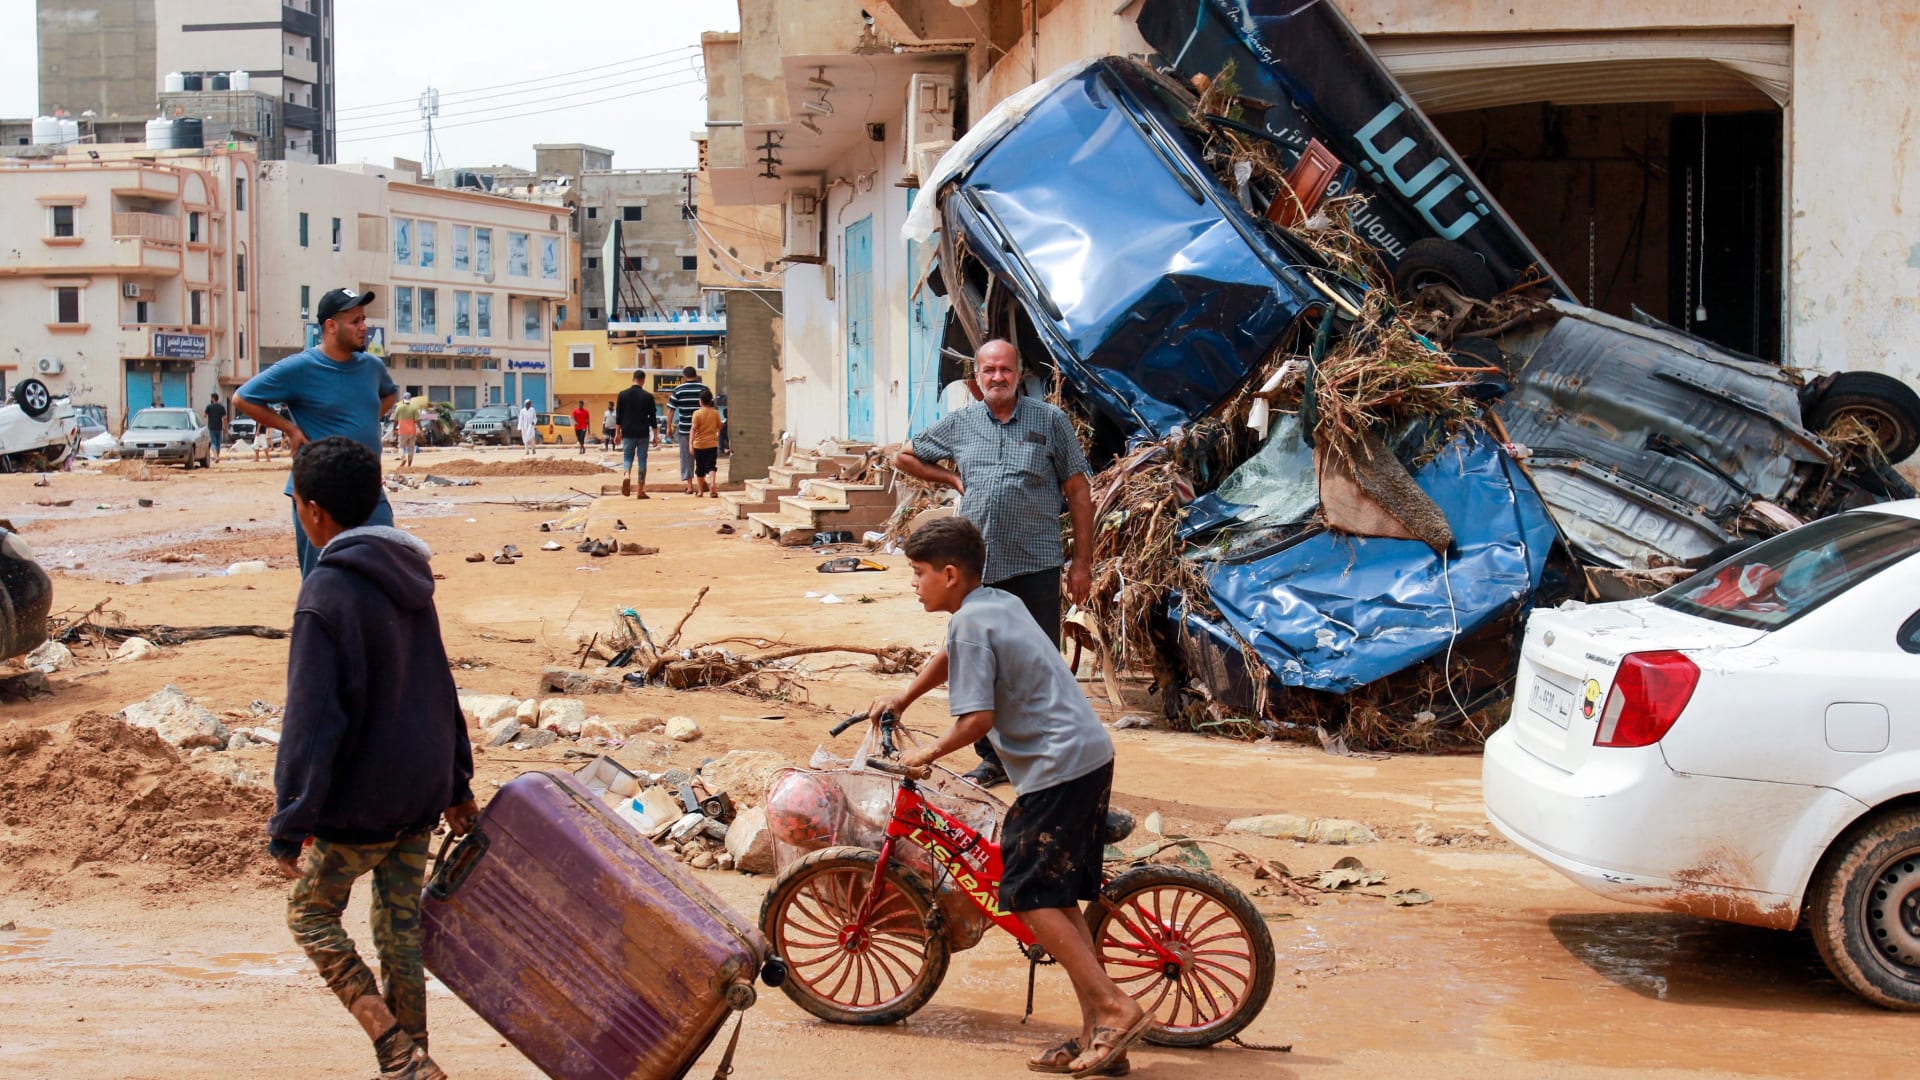 "كأنه مشهد من نهاية العالم".. فيضانات جرفت سدين وأحدثت الكارثة في ليبيا